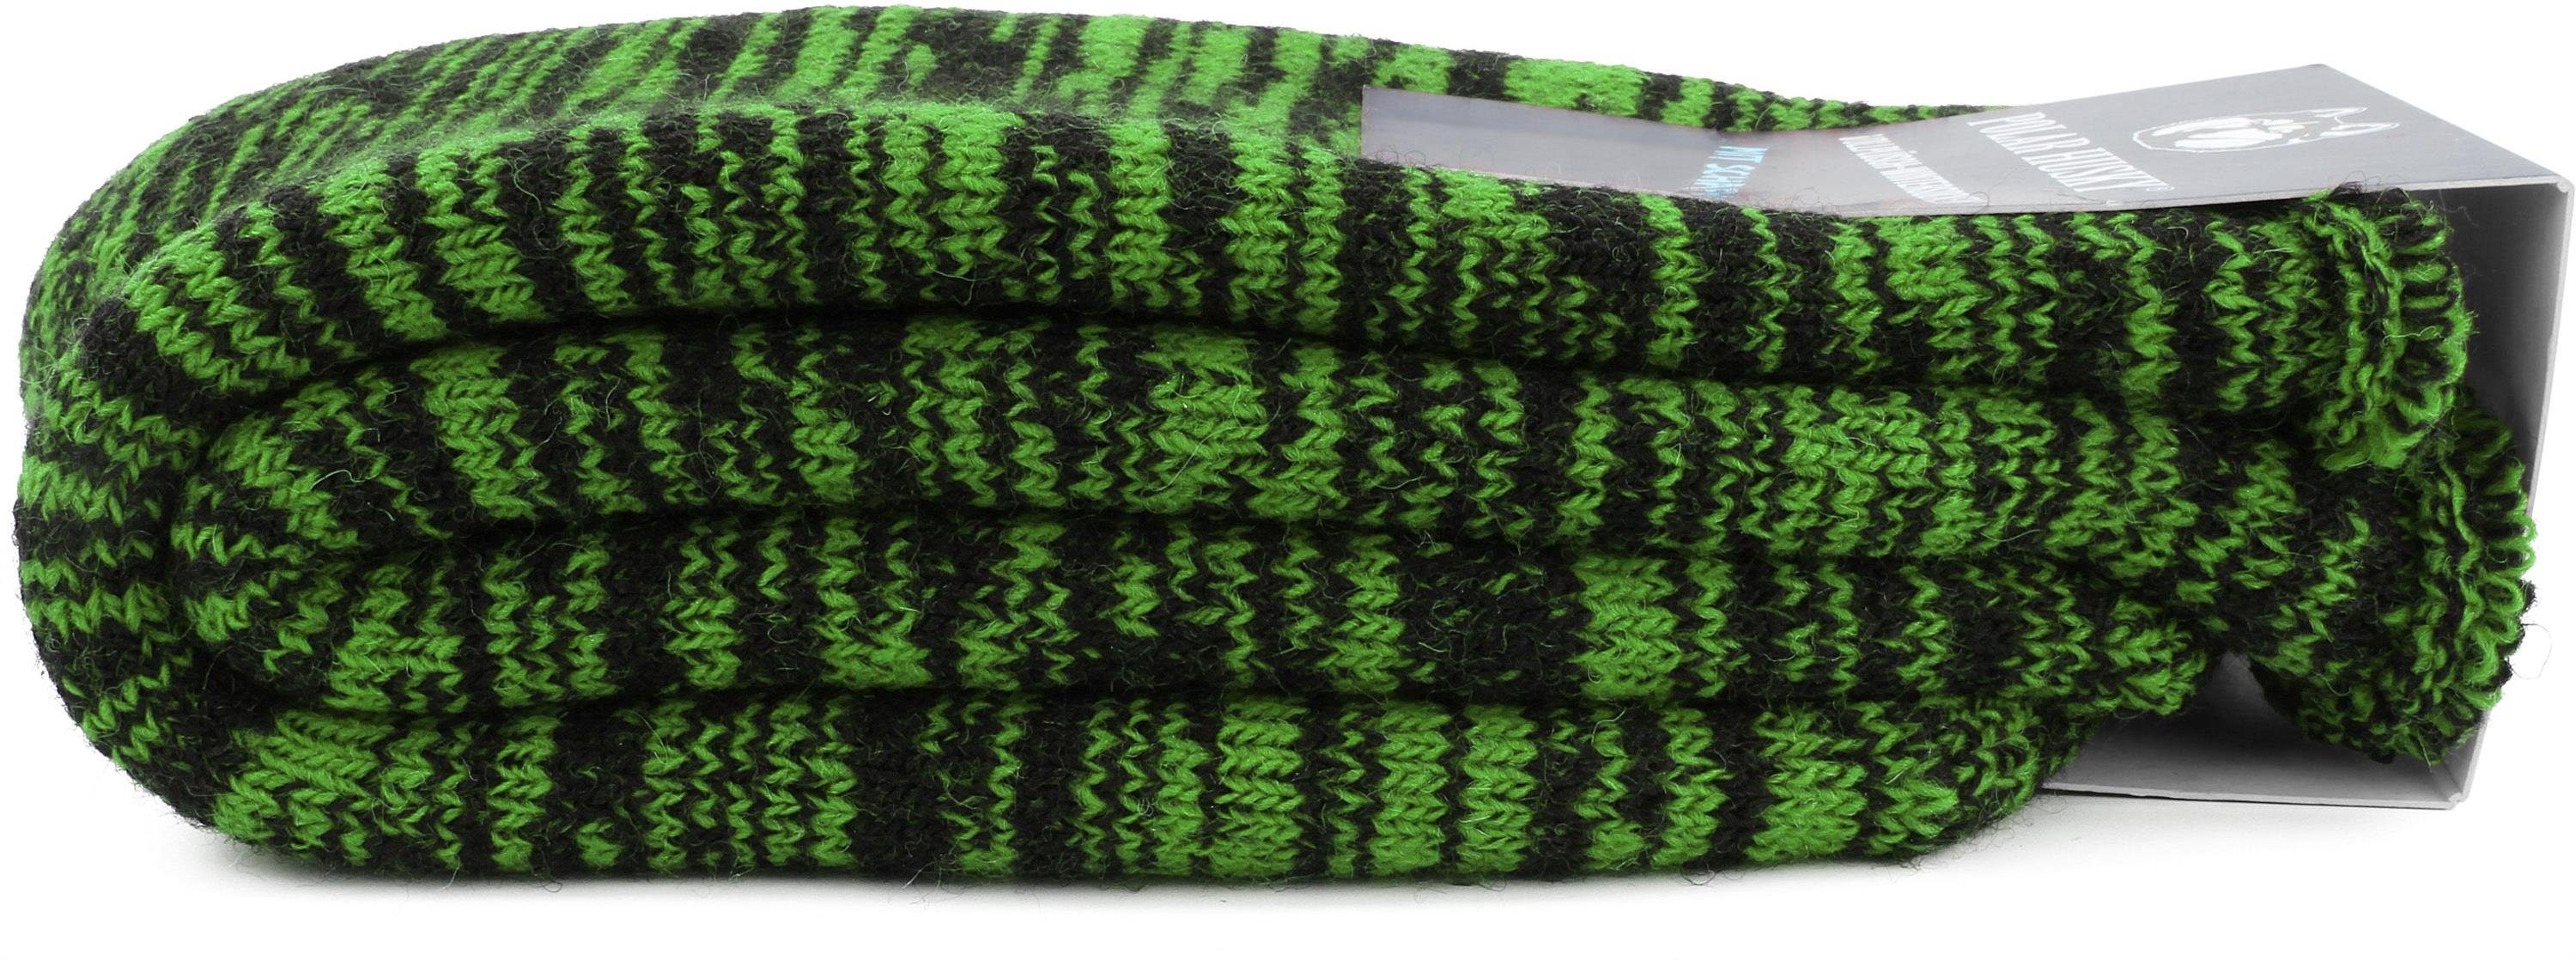 Wolle Husky mit gefüttert Farbige Vollplüsch-Socken Polar durchgehend Thermosocken Grün/Schwarz